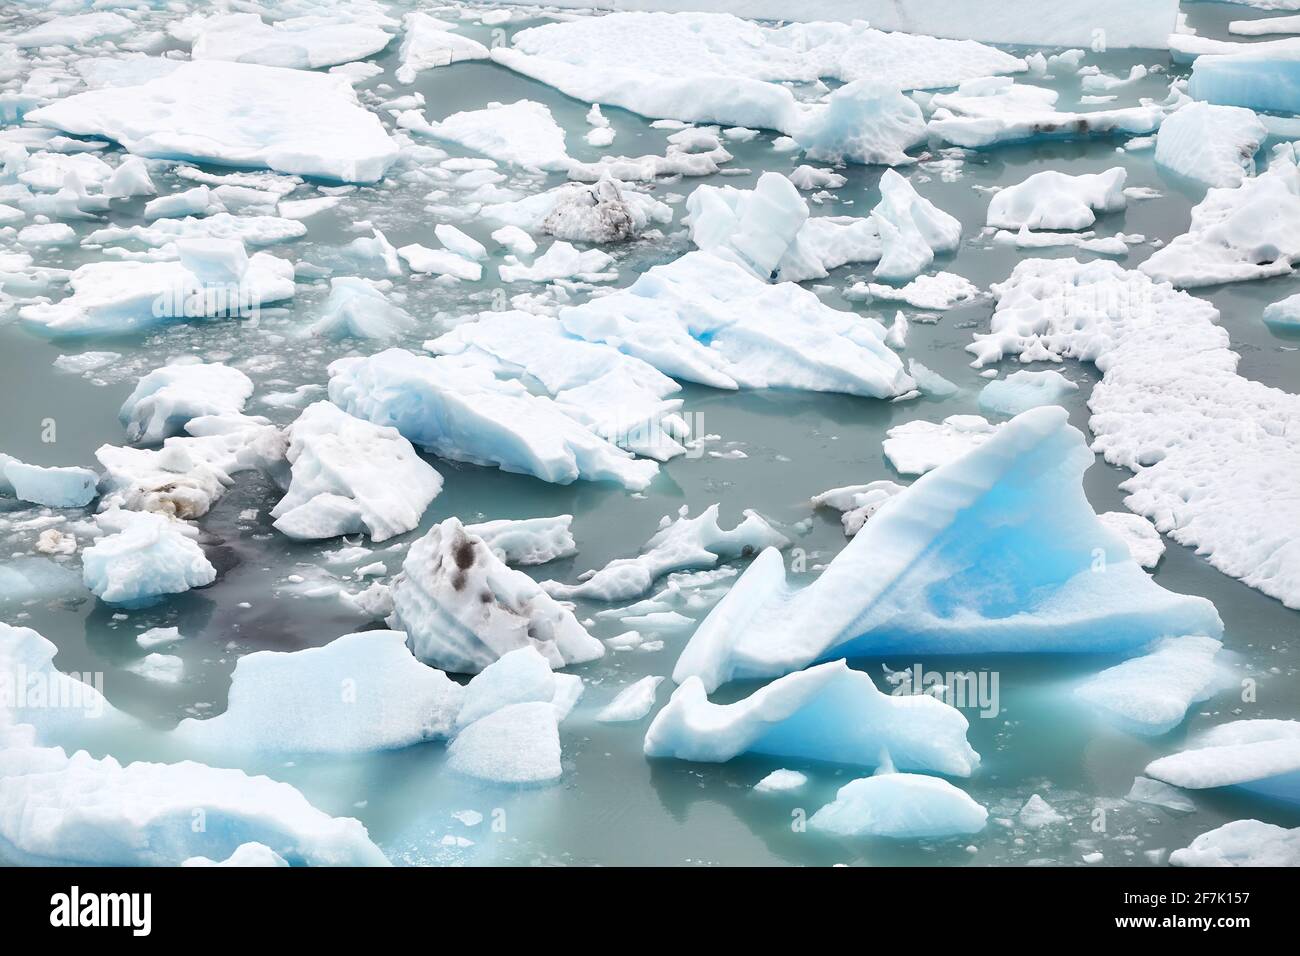 Morceaux de glace provenant de la fonte du glacier dans l'eau. Banque D'Images